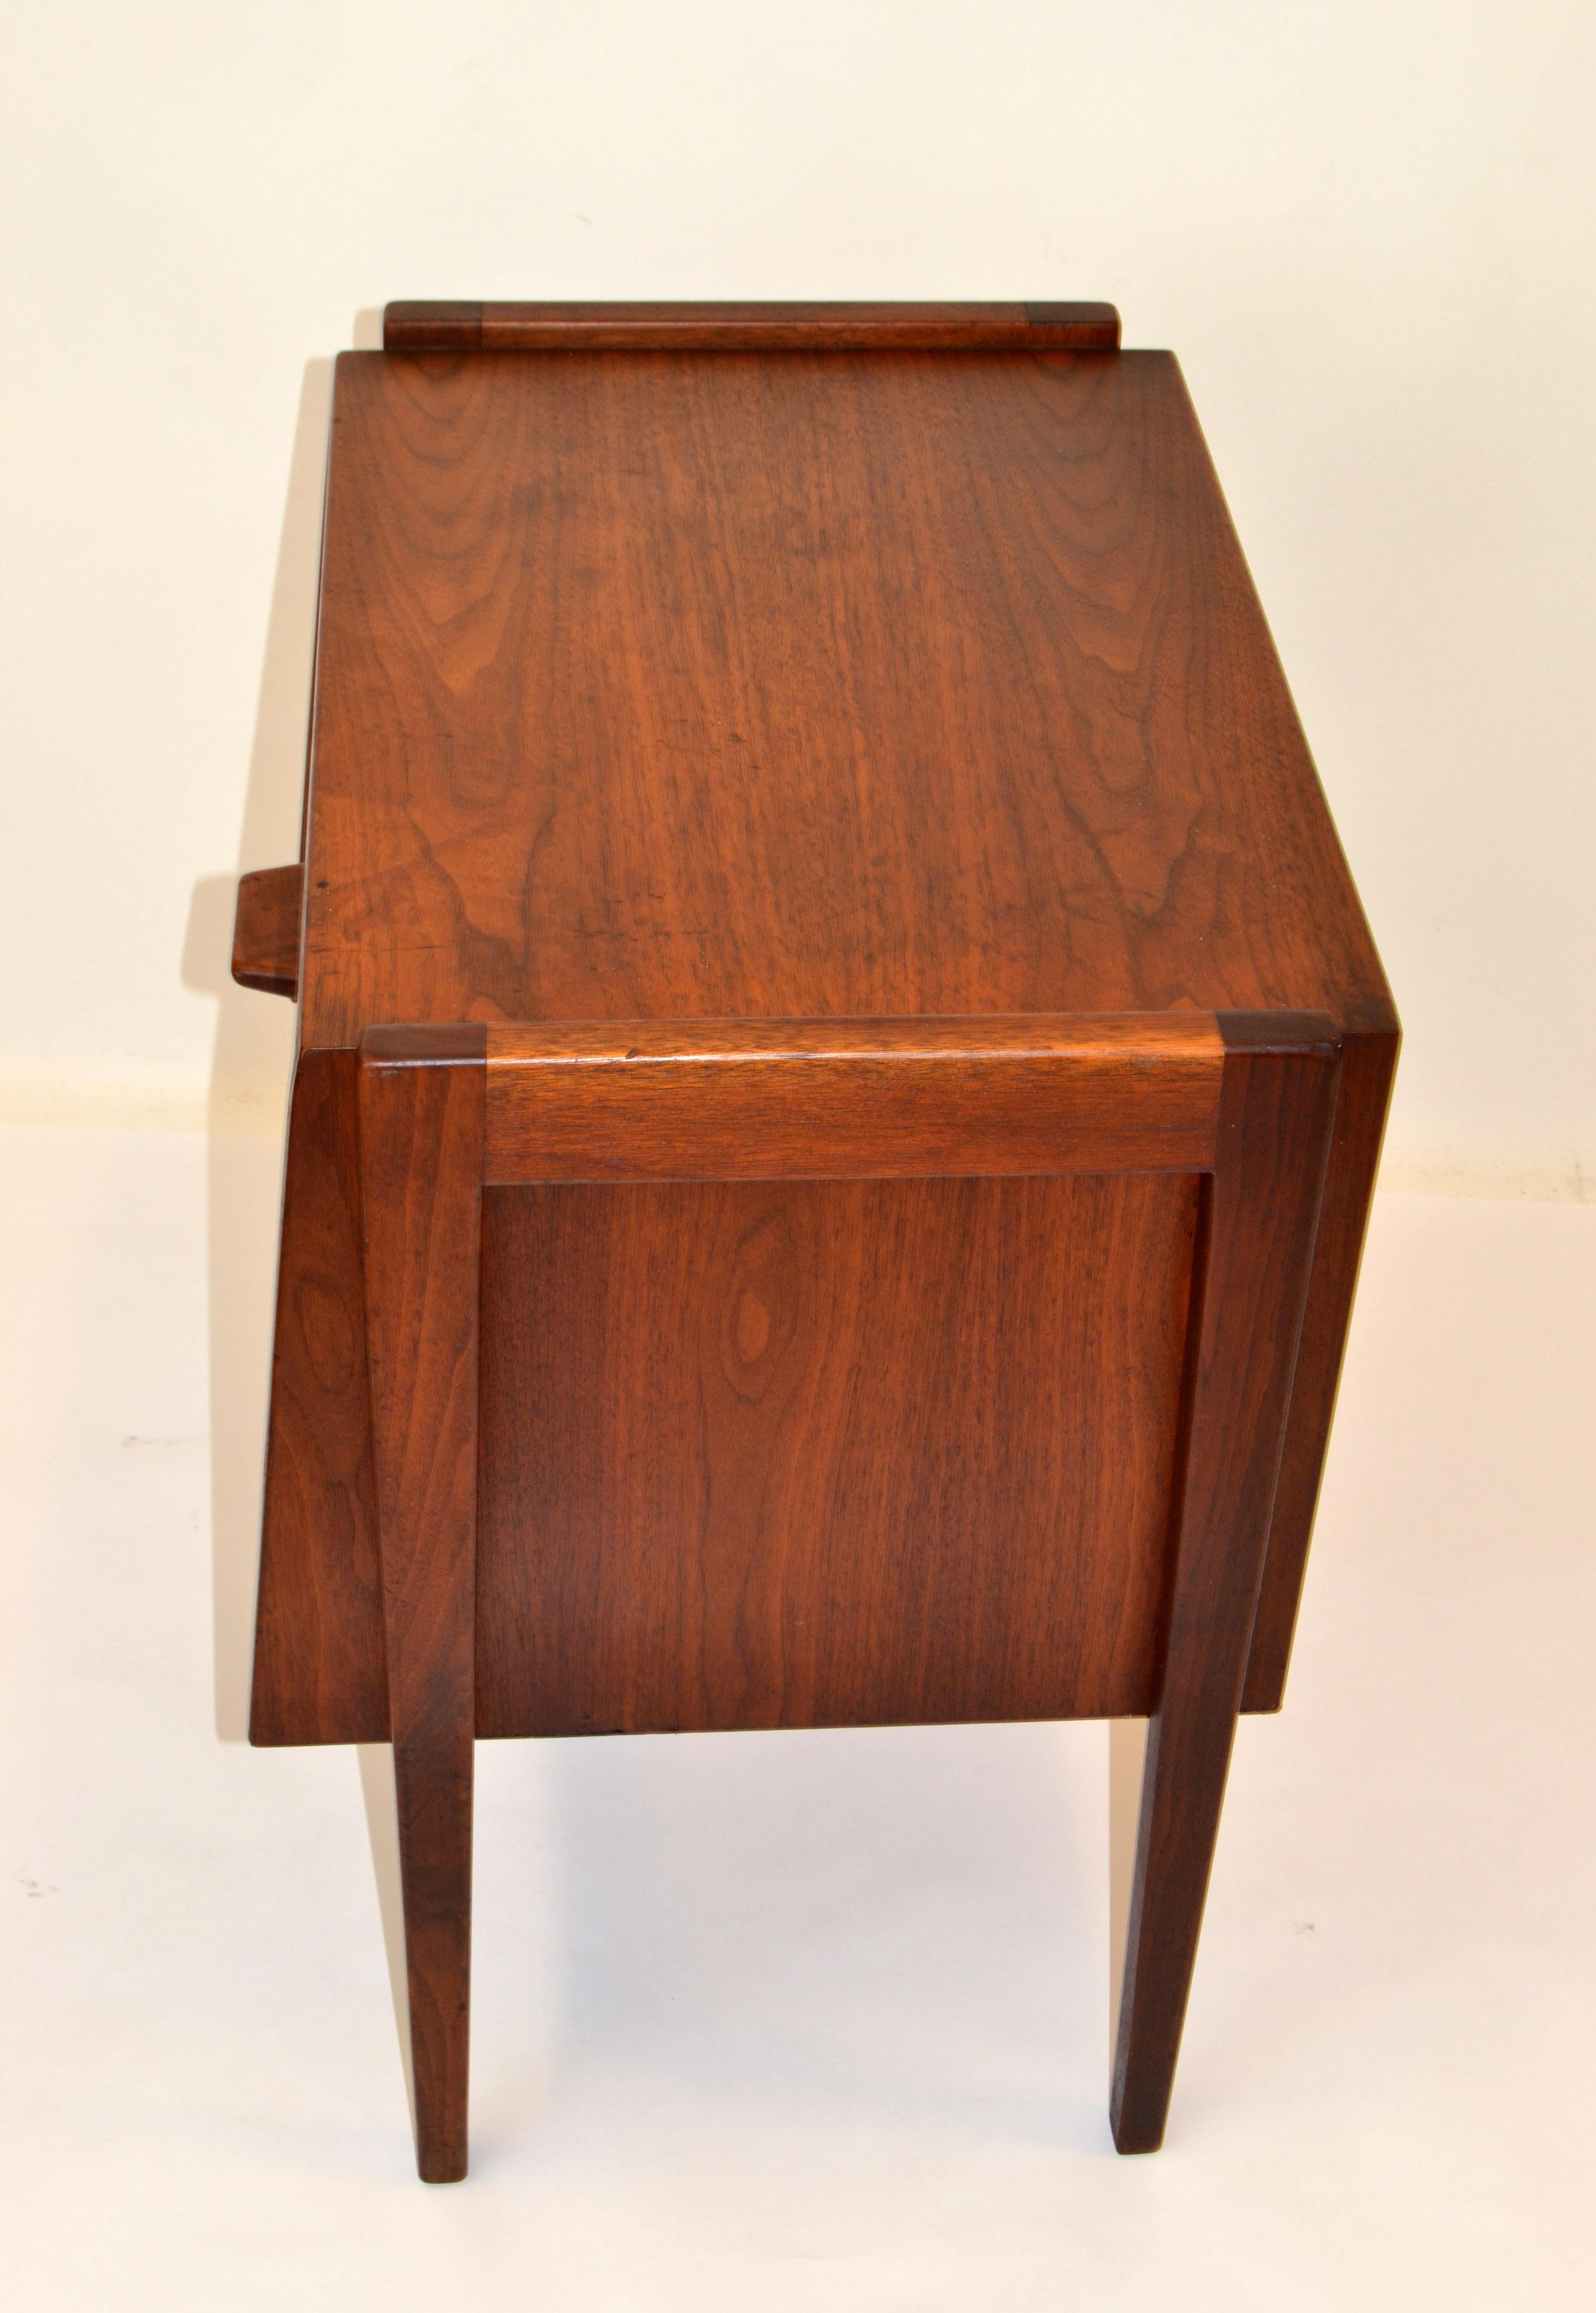 Jens Risom Scandinavian Modern Two-Tone Walnut Nightstand Bedside End Table 1950 For Sale 1